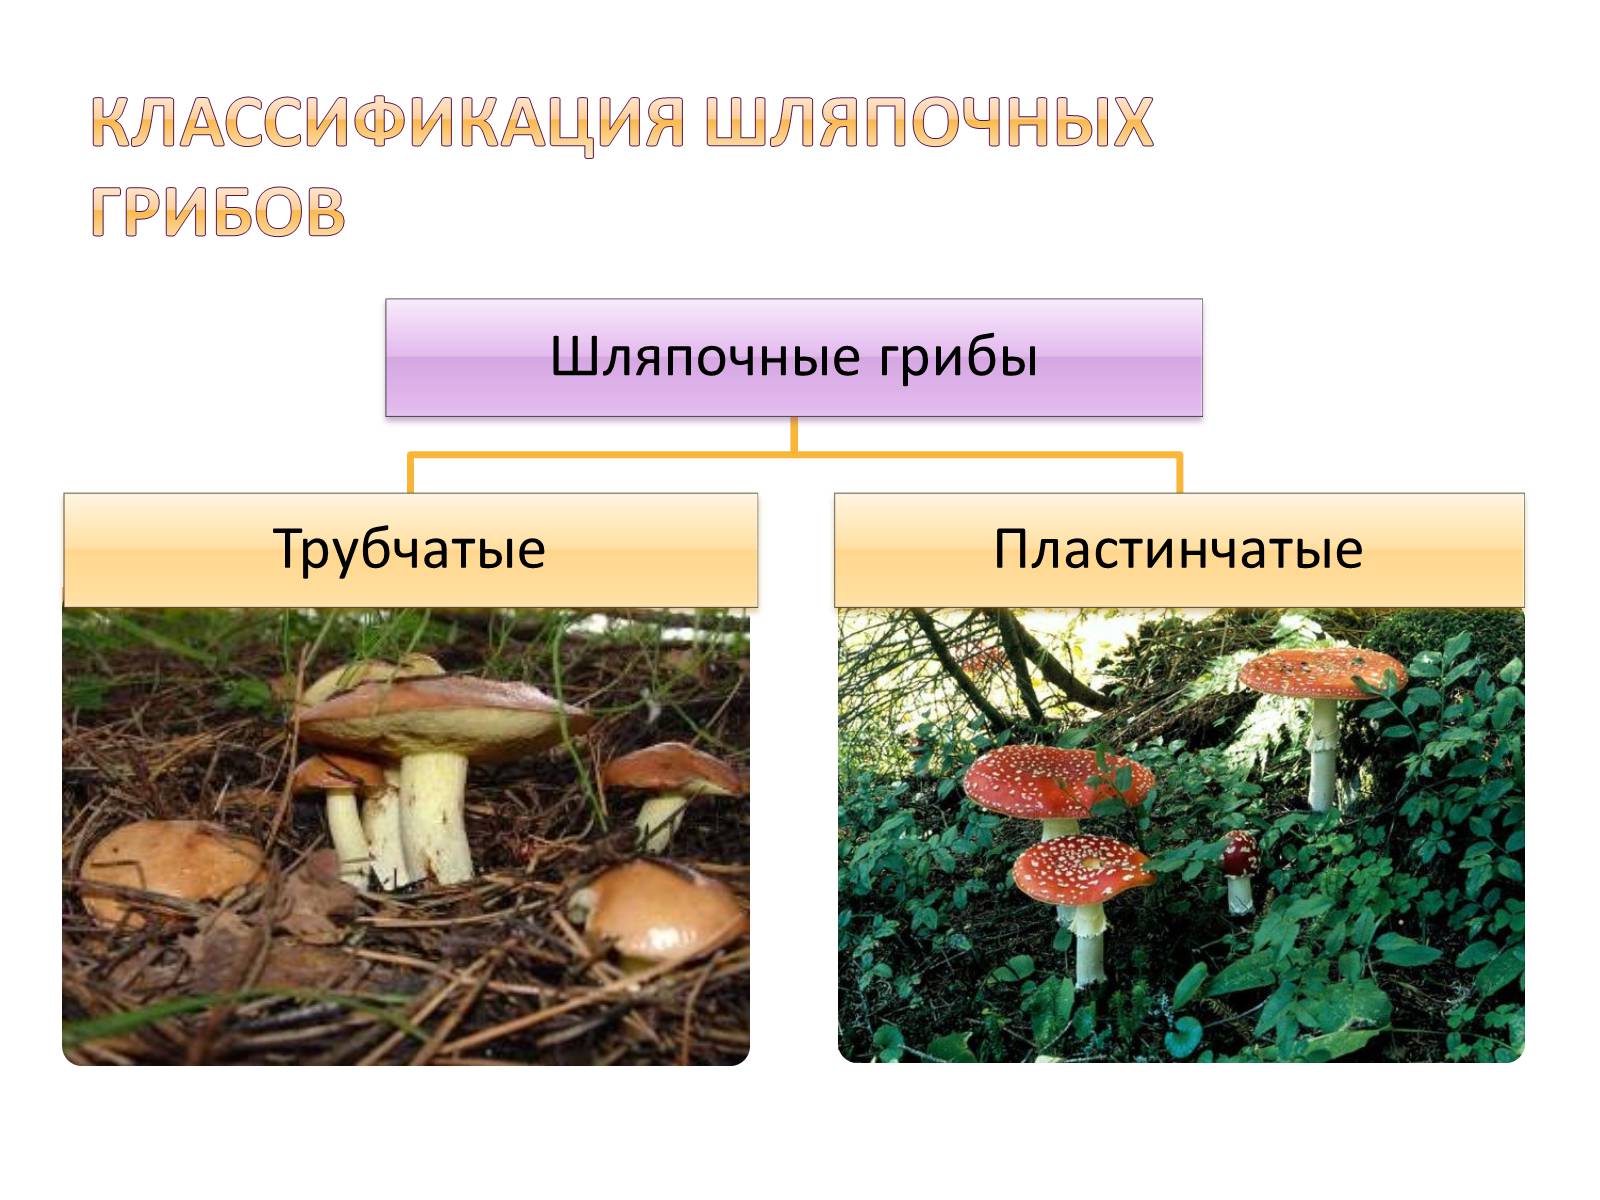 Чем трубчатые грибы отличаются от пластинчатых. Шляпочные грибы трубчатые и пластинчатые. Шляпочные трубчатые грибы Шляпочные пластинчатые грибы. Шляпочные трубчатые. Классификация грибов трубчатые пластинчатые.